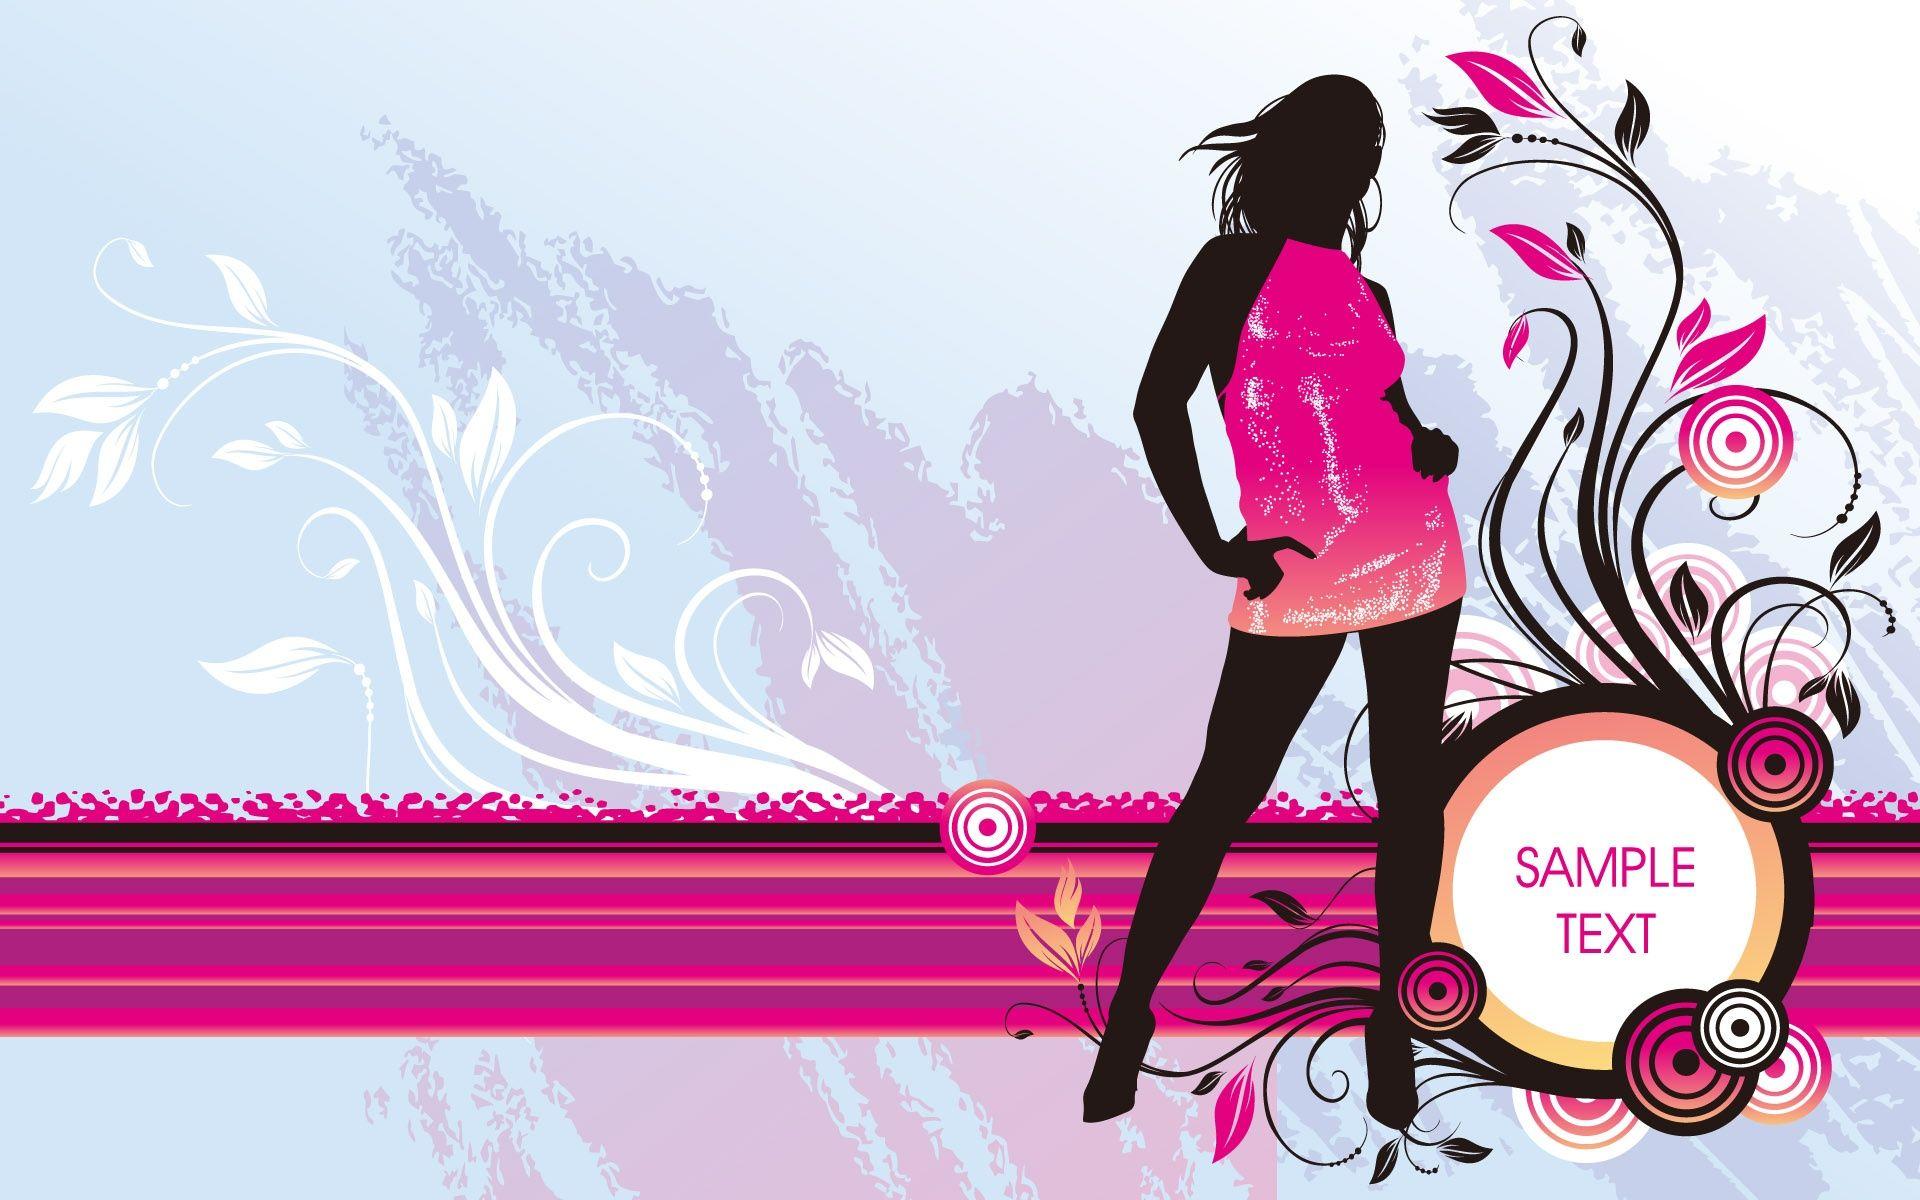 Fashion Designer Wallpaper Images  Free Download on Freepik